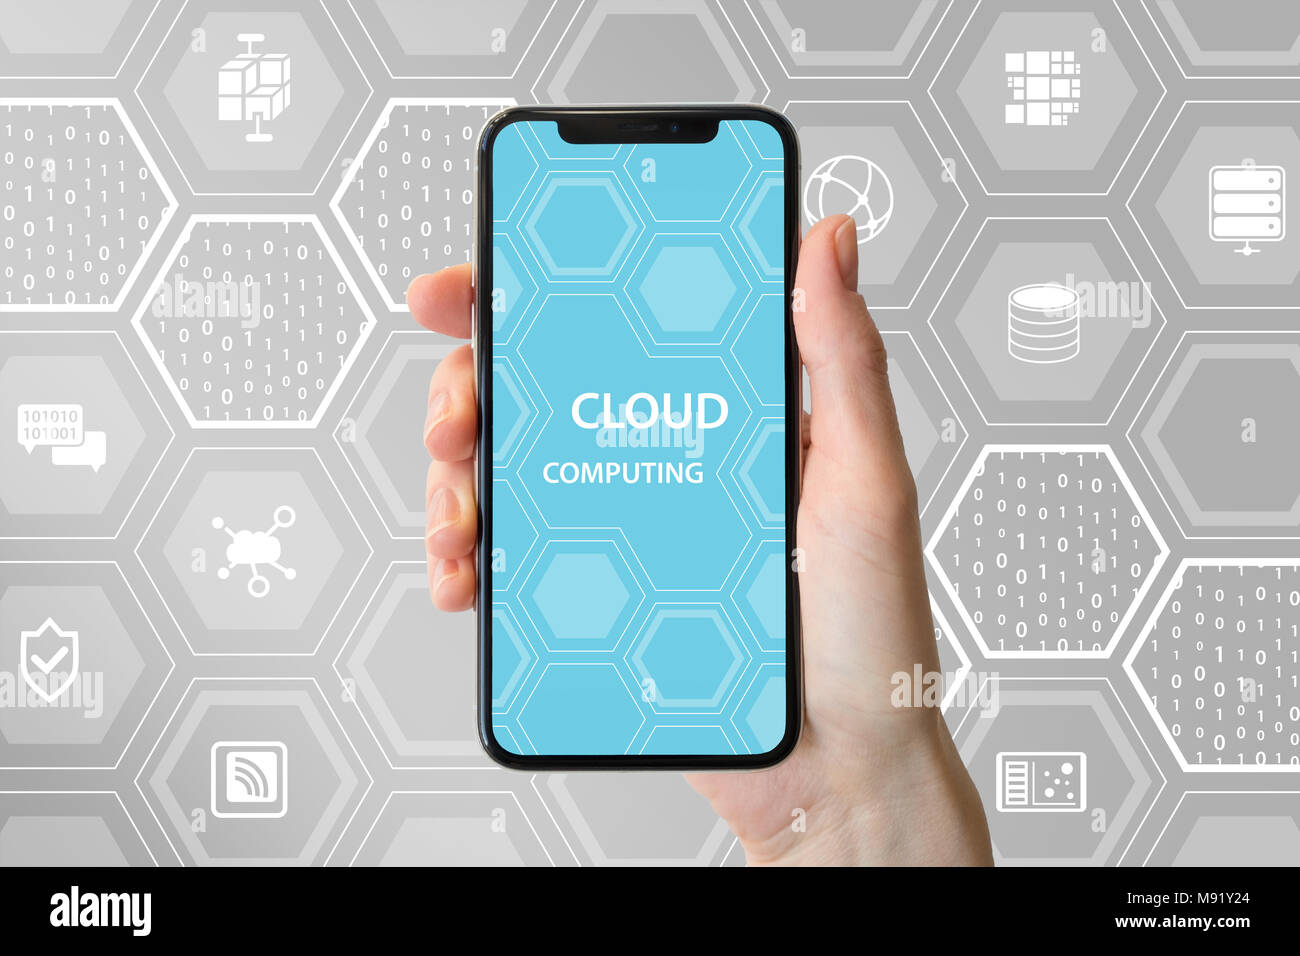 Cloud computing le texte affiché à l'écran tactile sans cadre. Hand holding smart phone moderne. Banque D'Images